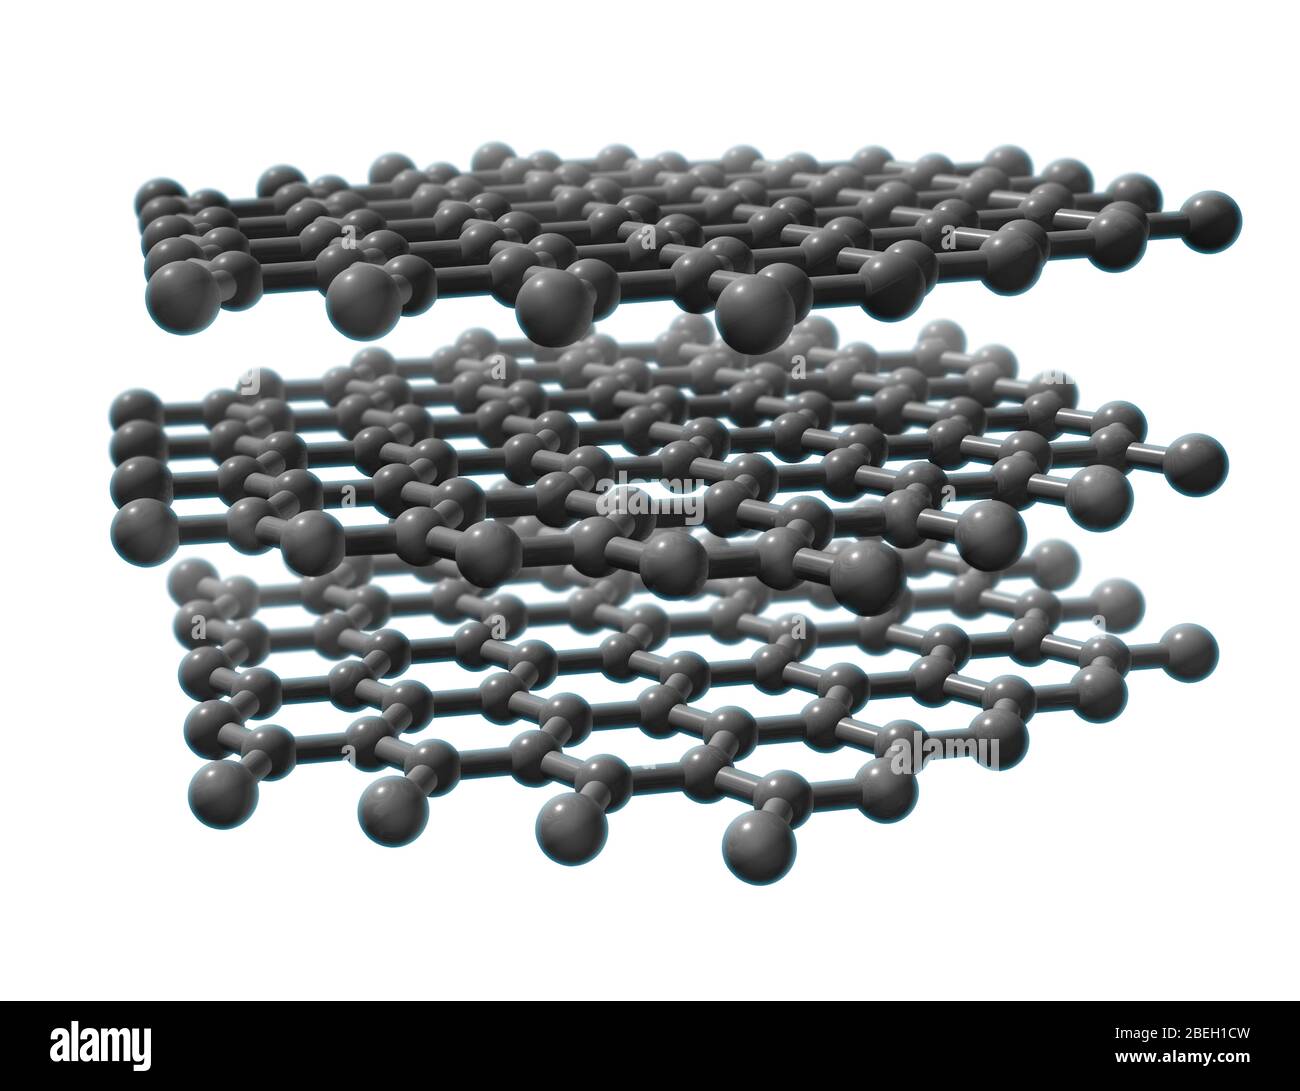 Ein molekulares Modell von Graphit, einem Mineral, das aus gestapelten  Schichten von Kohlenstoffatomen besteht, die in einem Wabengitter  angeordnet sind. Graphit gilt als die stabilste Form von Kohlenstoff unter  Standardbedingungen und wird